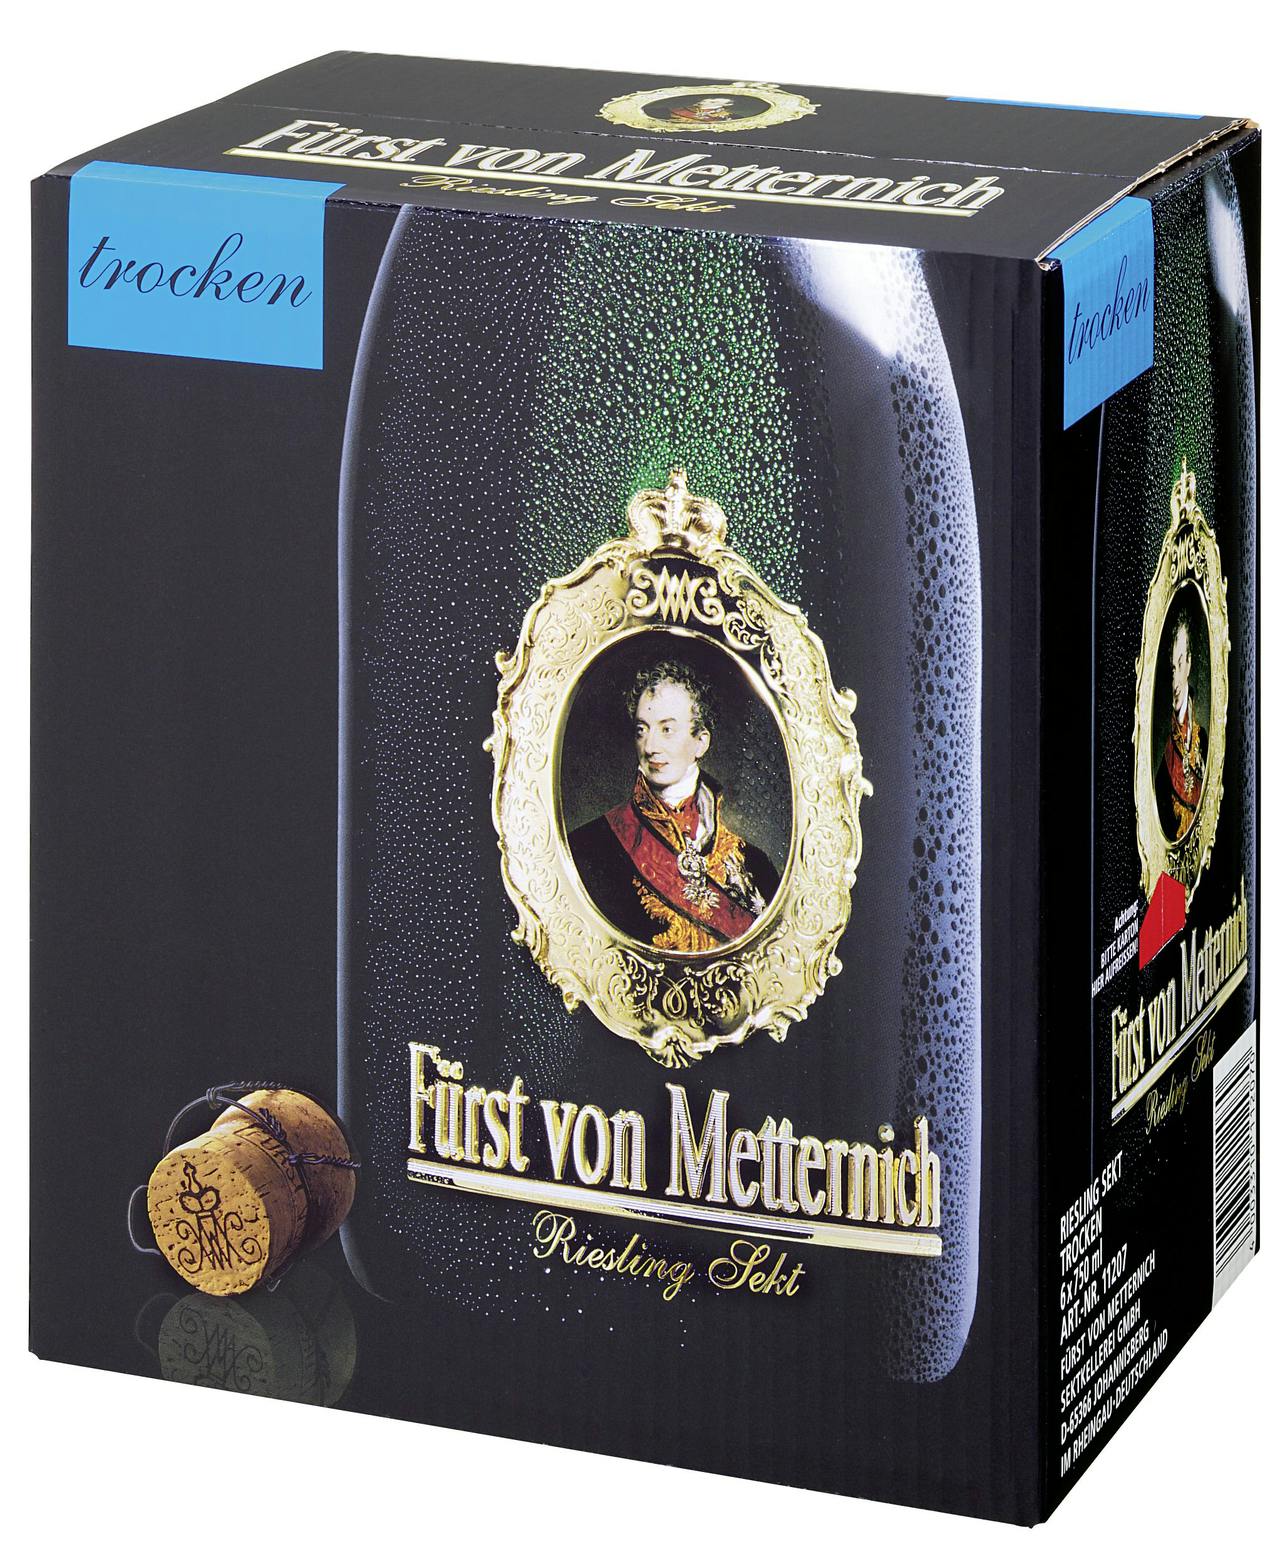 Fürst von Metternich Riesling Flaschen trocken 6 | l 0,75 (4,5 METRO l) Marktplatz Sekt x